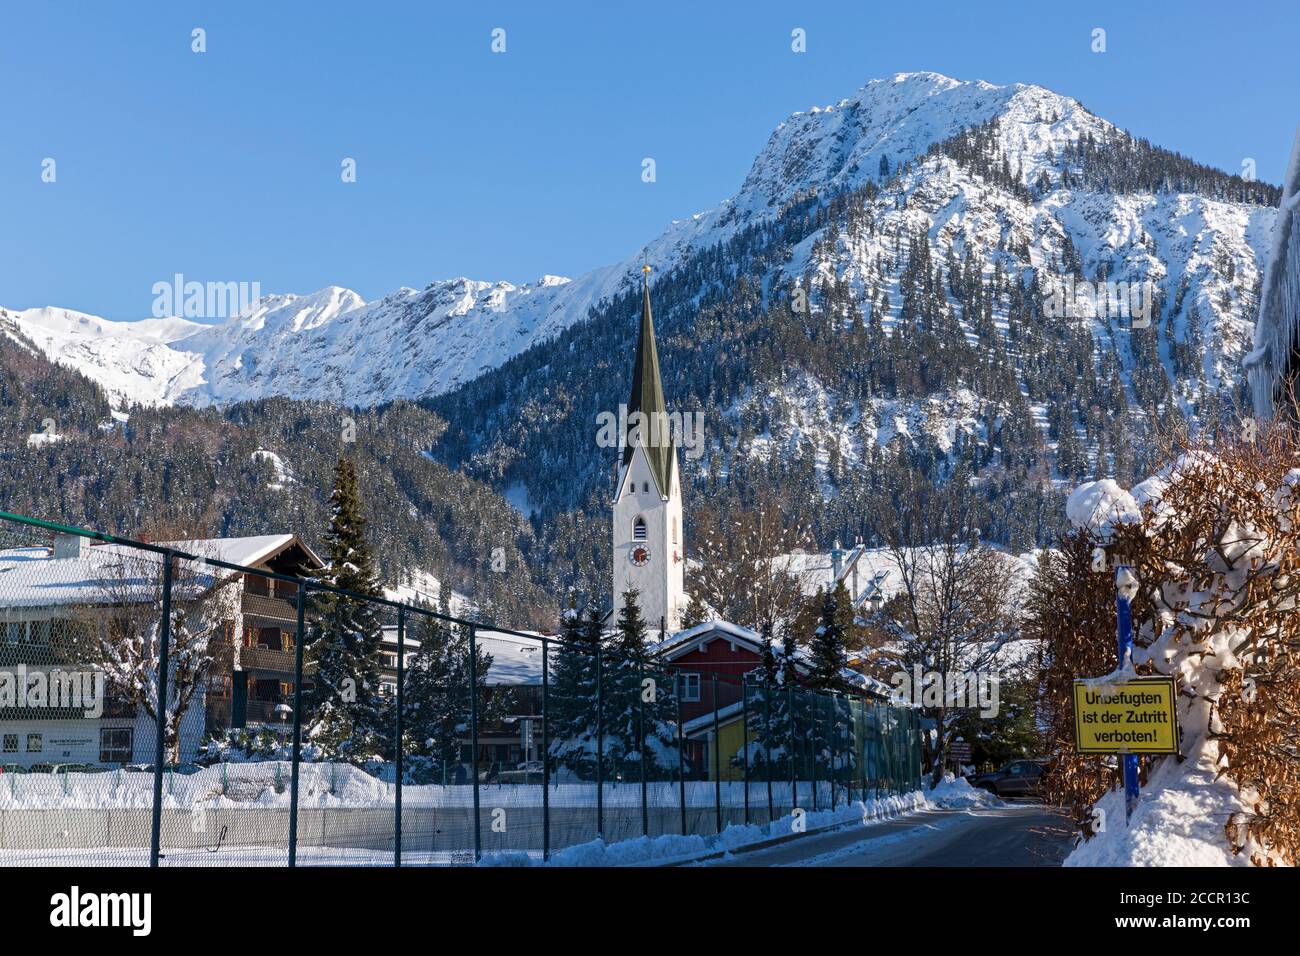 Oberstdorf, Kirche, Strasse, Schnee, Wohnhäuser, Allgäuer Alpen Foto de stock